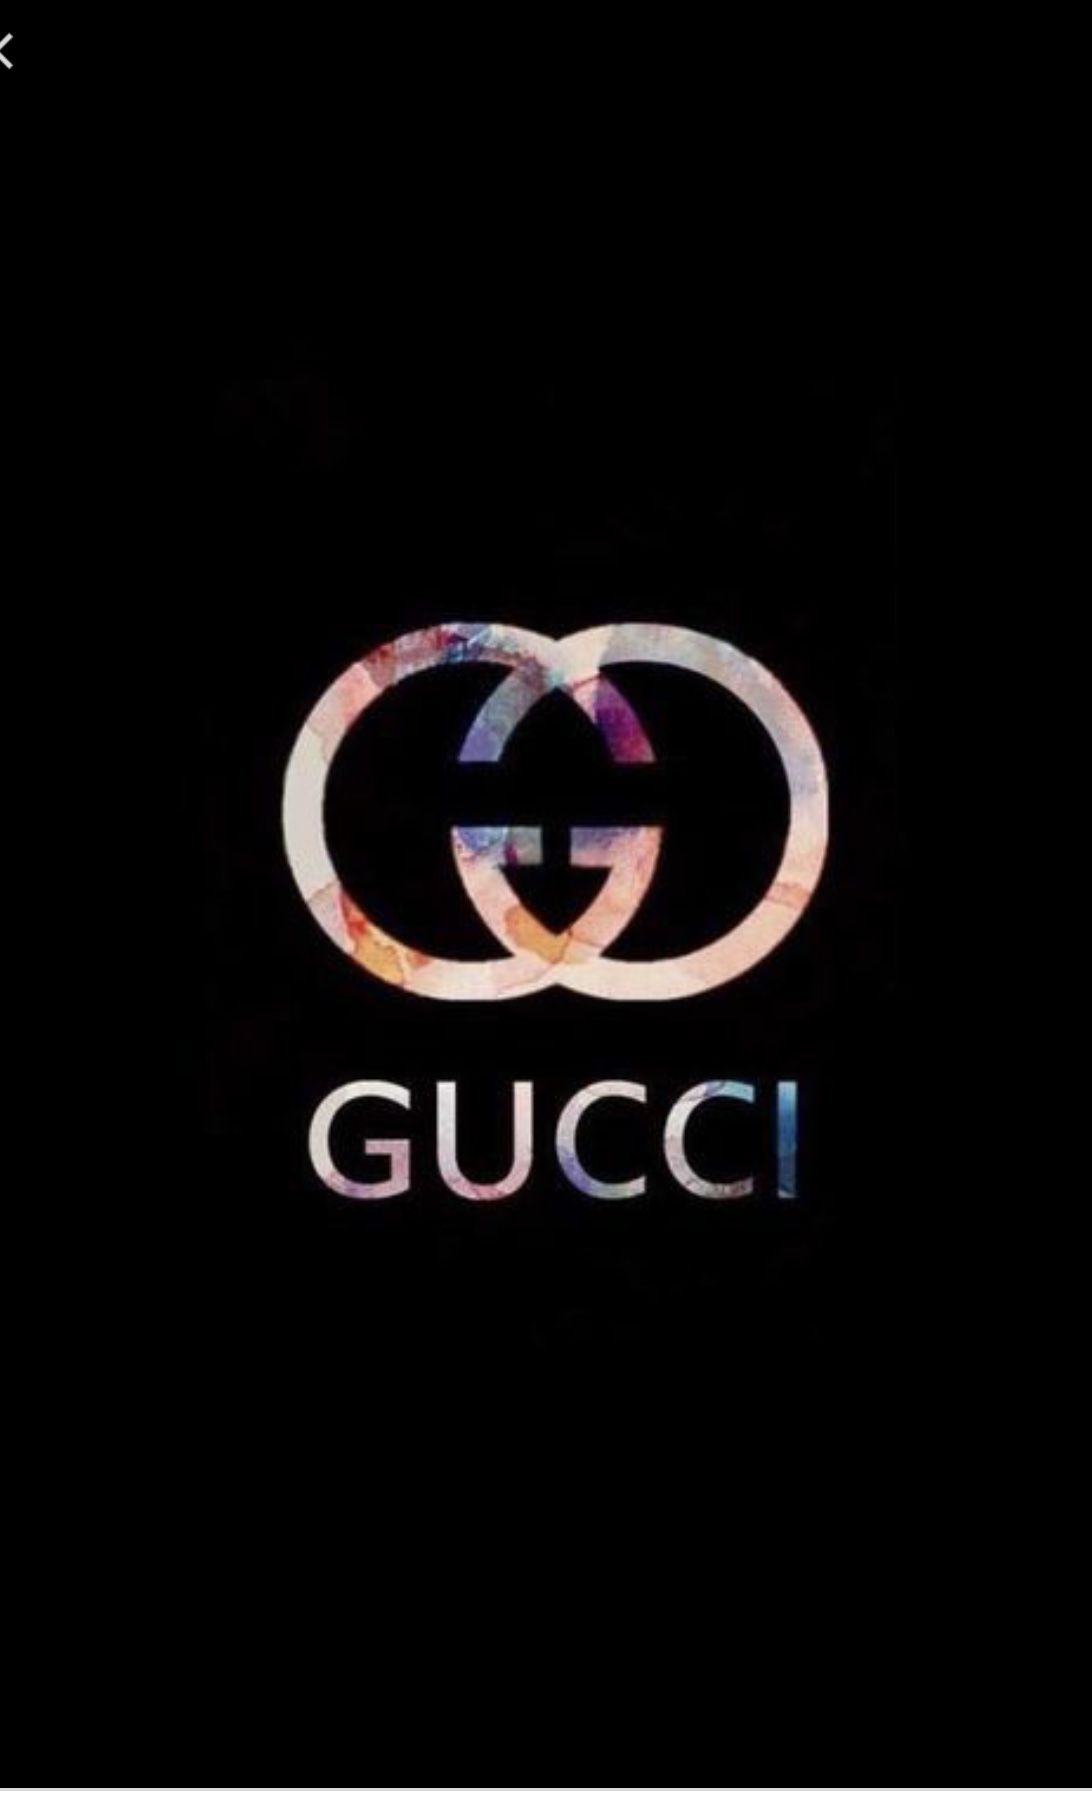 Cute Gucci Wallpaper Free Cute Gucci Background